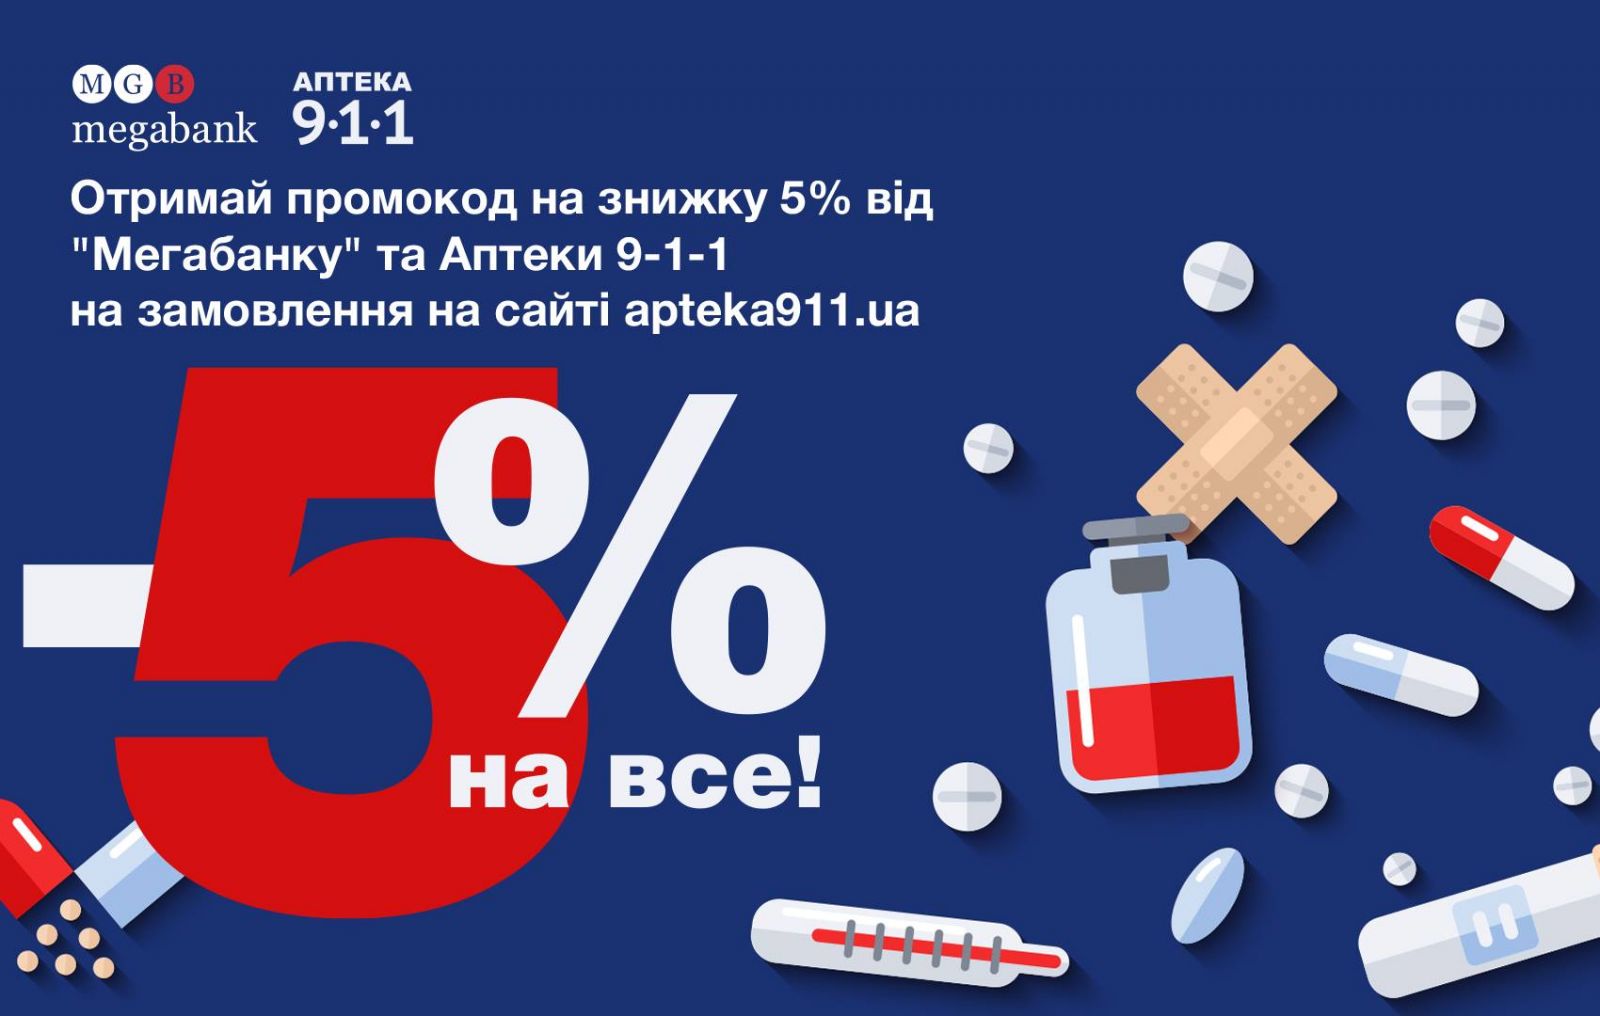 «МЕГАБАНК» и Аптека 9-1-1 предоставляют промокод на скидку 5%